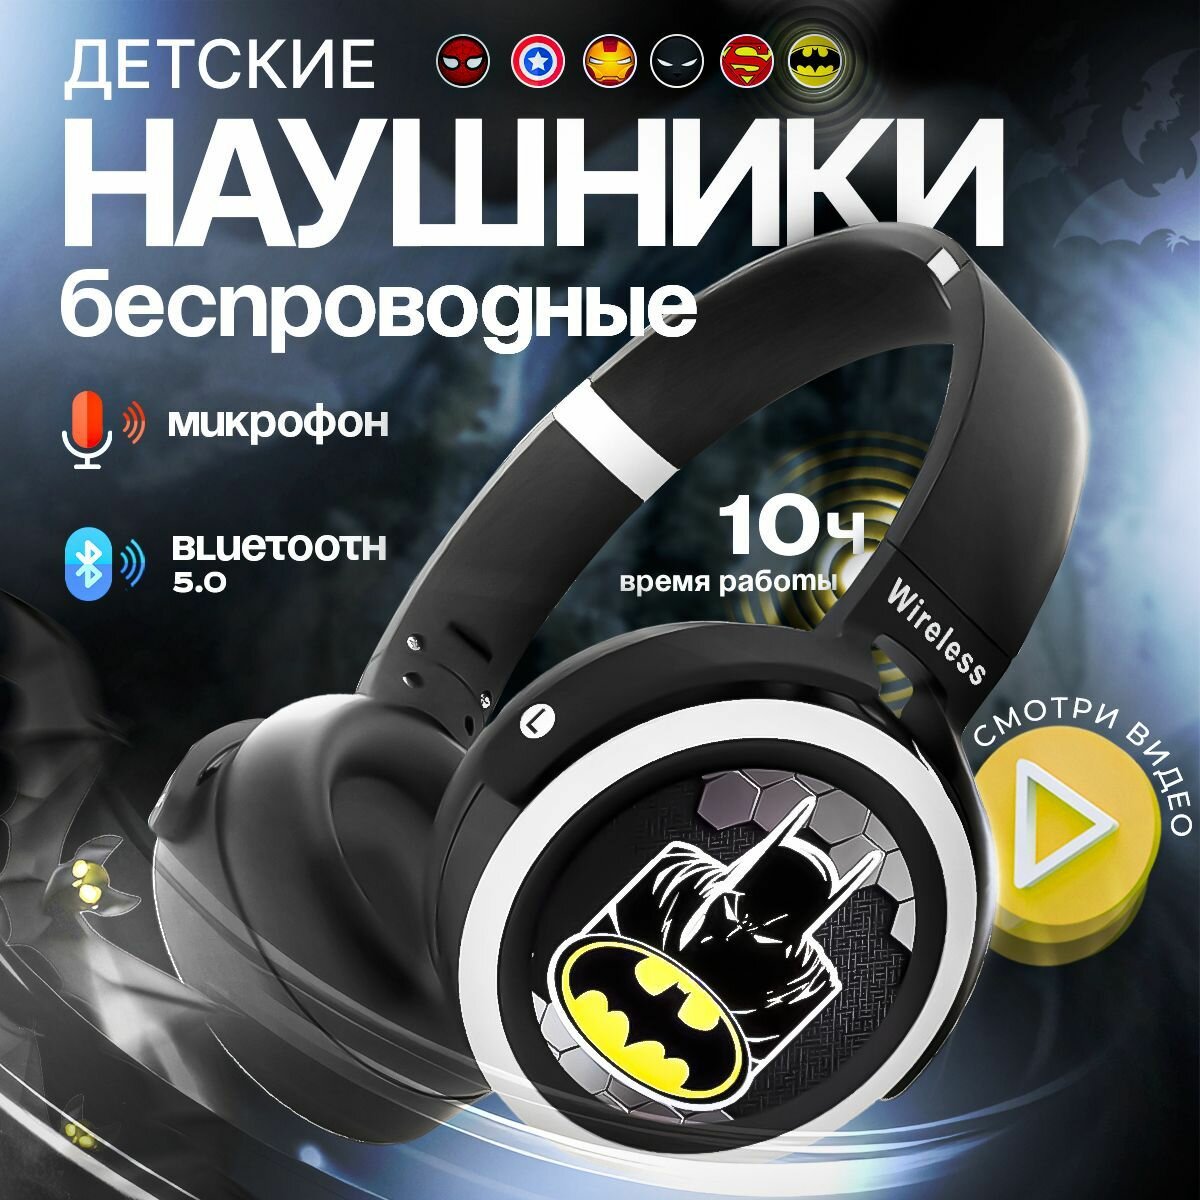 Наушники детские беспроводные Бэтмен KA-906, с Bluetooth 5.0, с микрофоном, чёрные